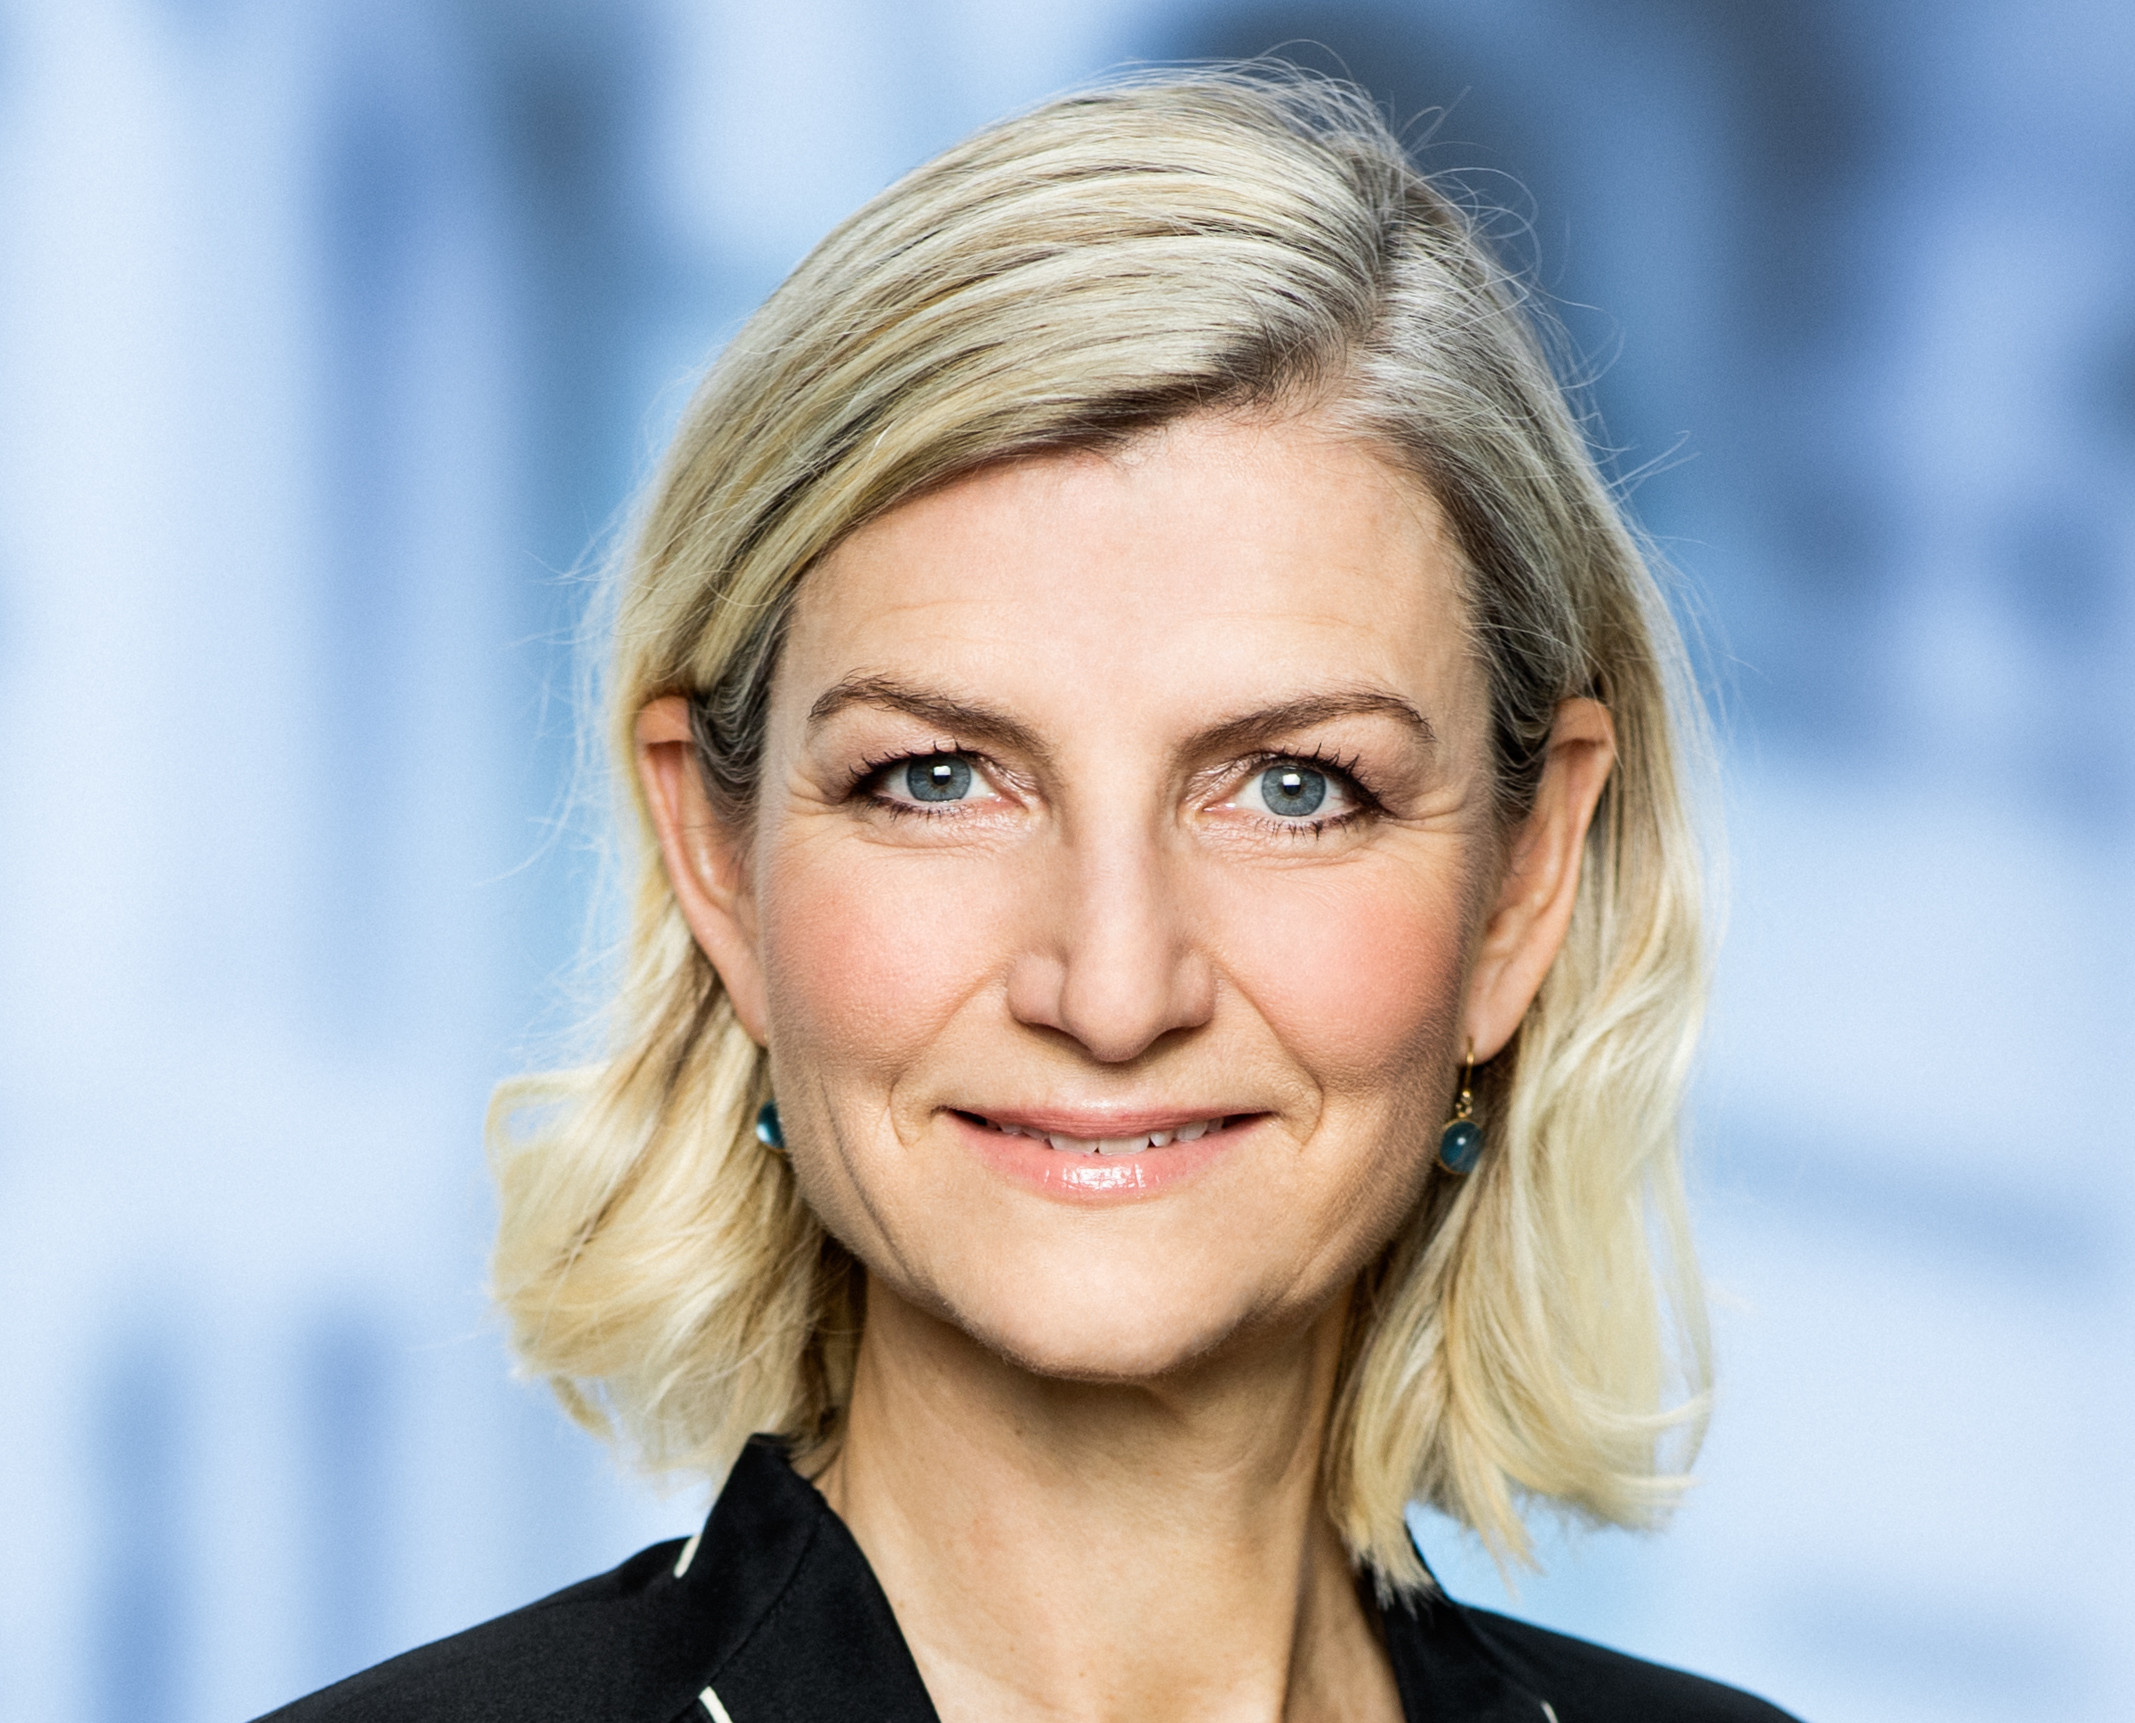 Venstre vil sikre en bedre uddannelsesbalance i Danmark, skriver uddannelsesordfører Ulla Tørnæs-